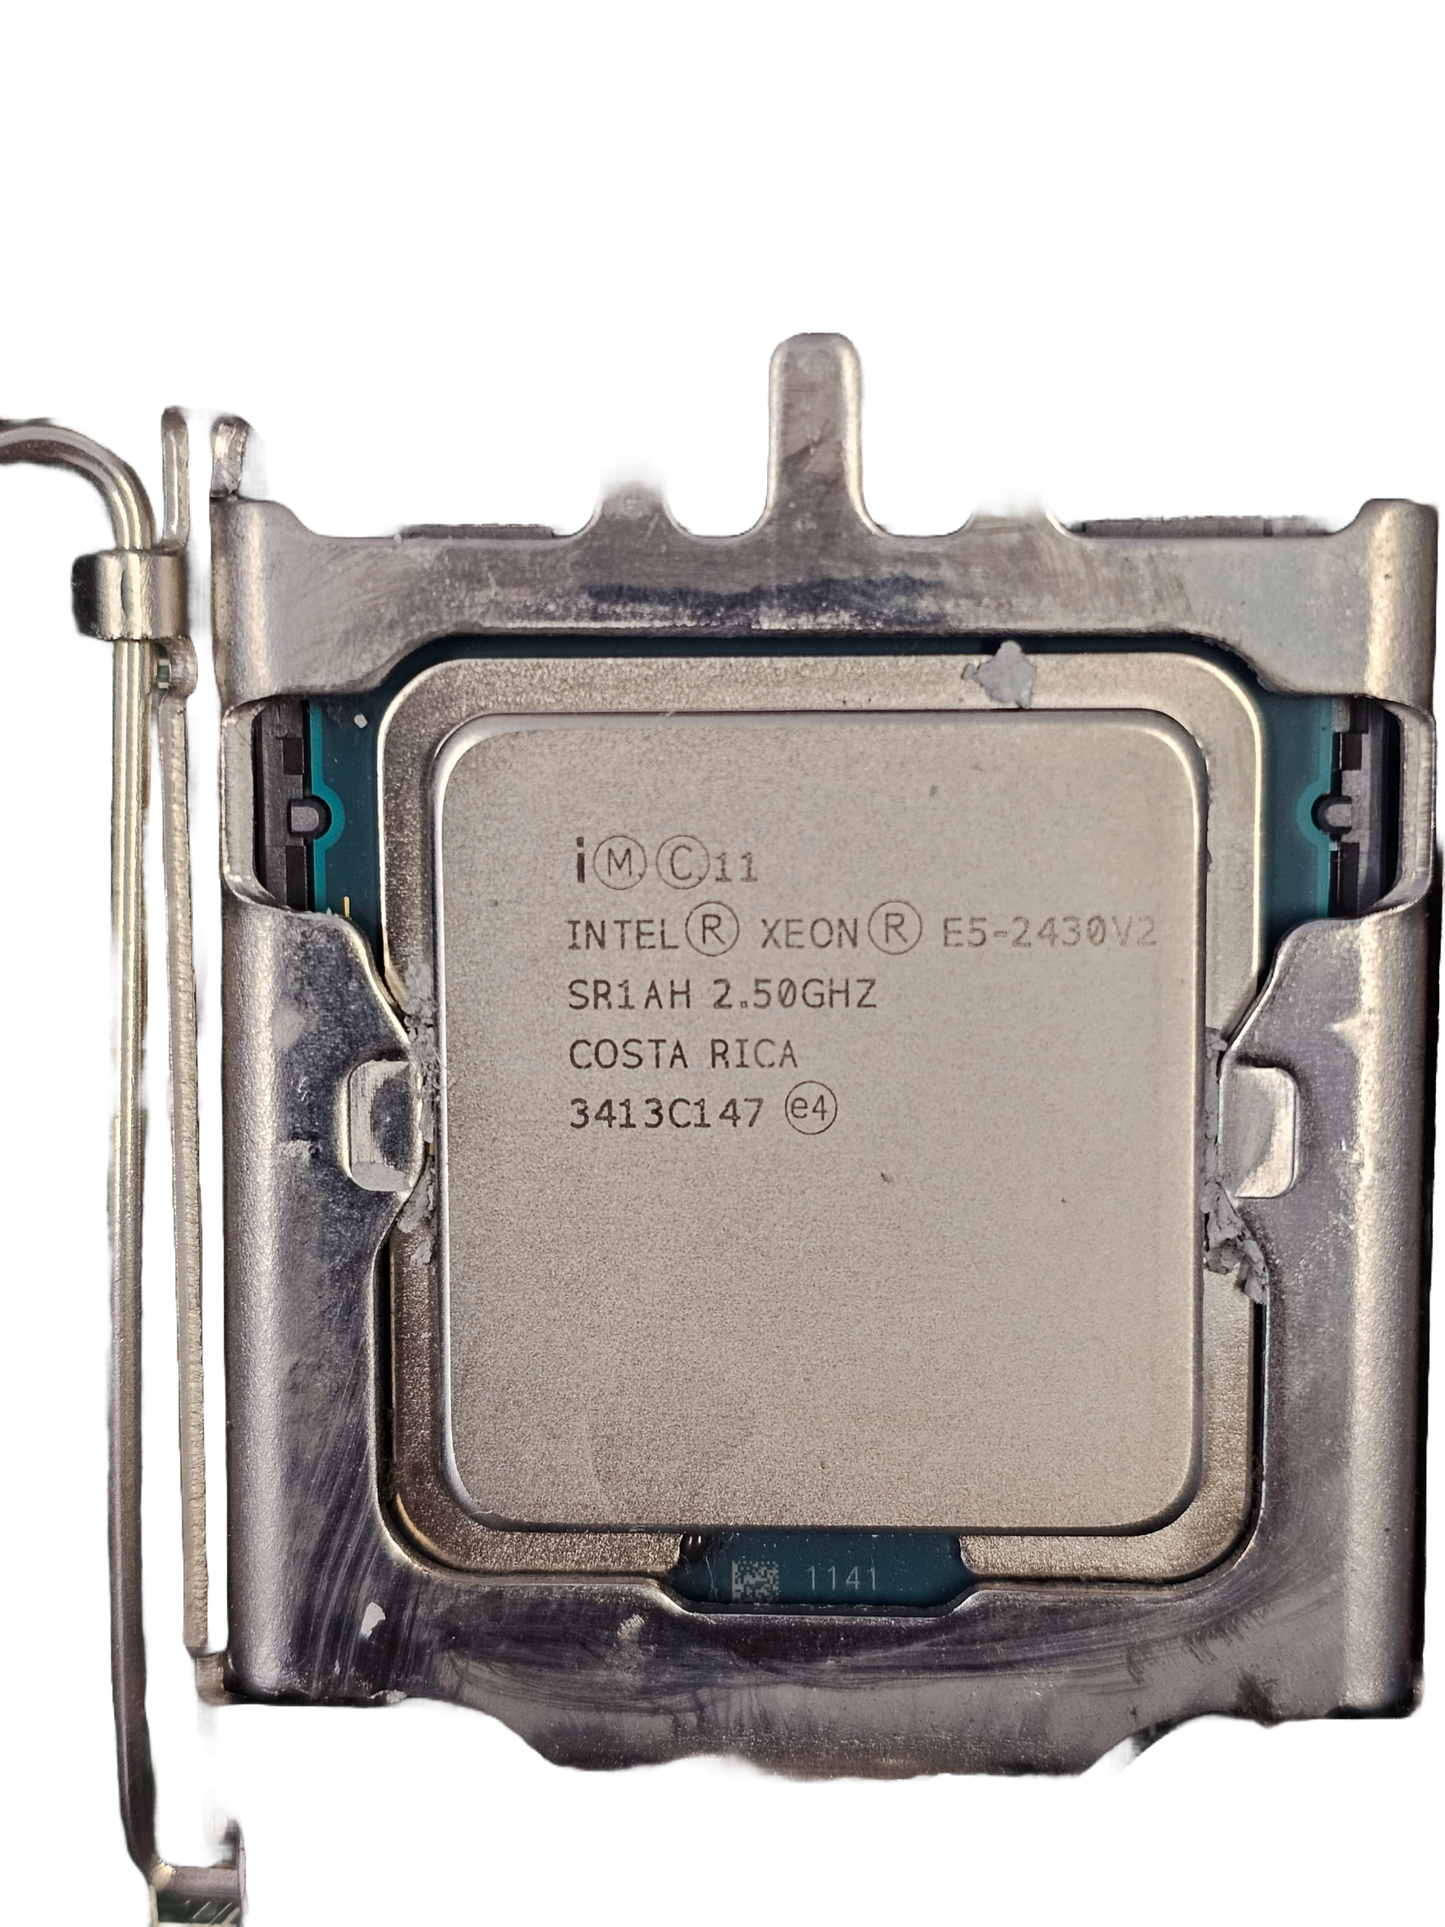 Dell PowerEdge R520 Intel Xeon E52430V2 CPU - Used